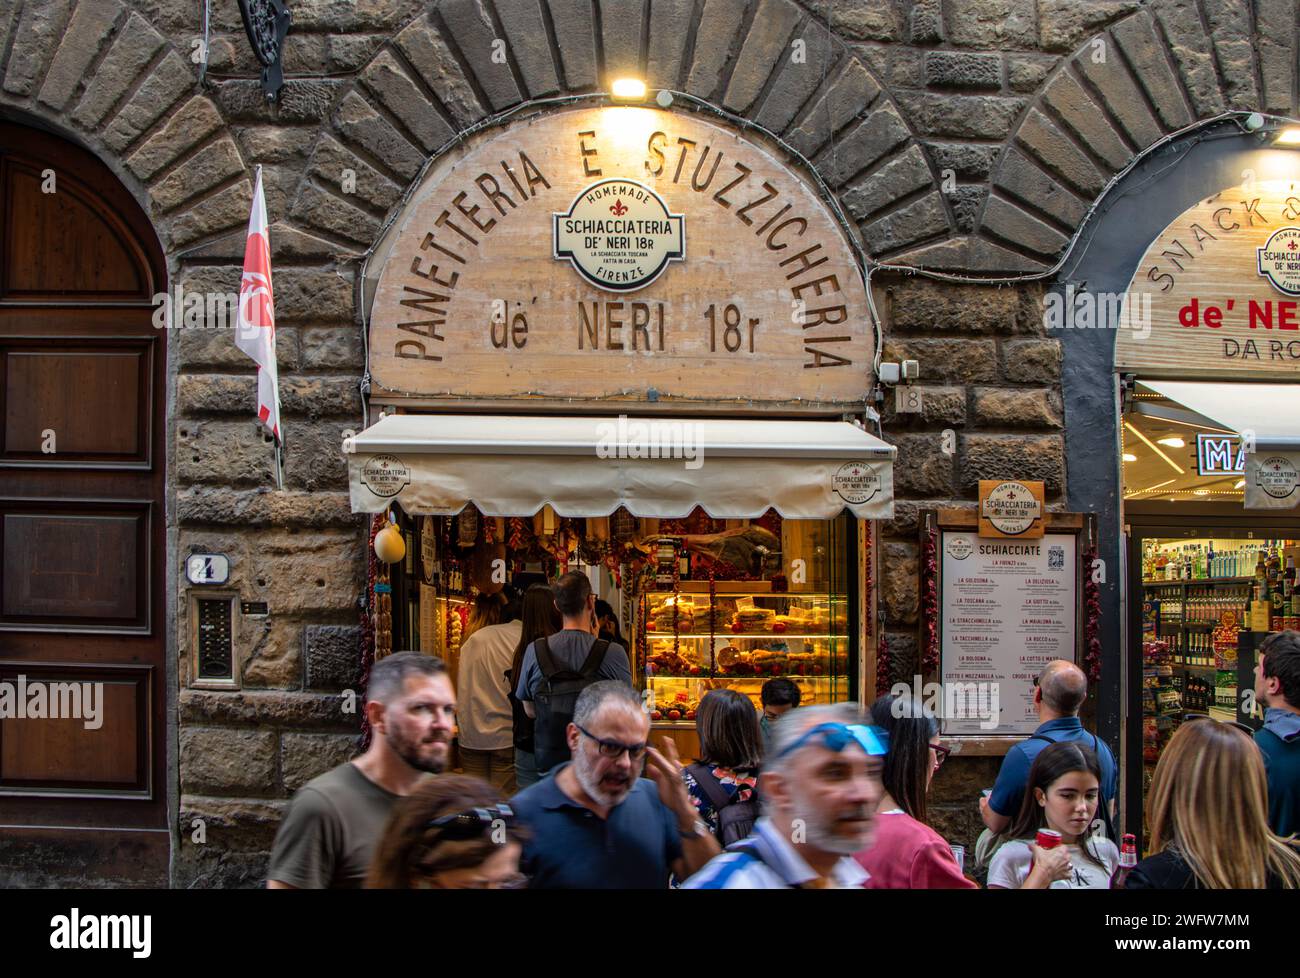 Les gens faisant la queue devant Schiacciateria de' Neri 18R une sandwicherie populaire sur la via dei Neri, Florence, Italie Banque D'Images